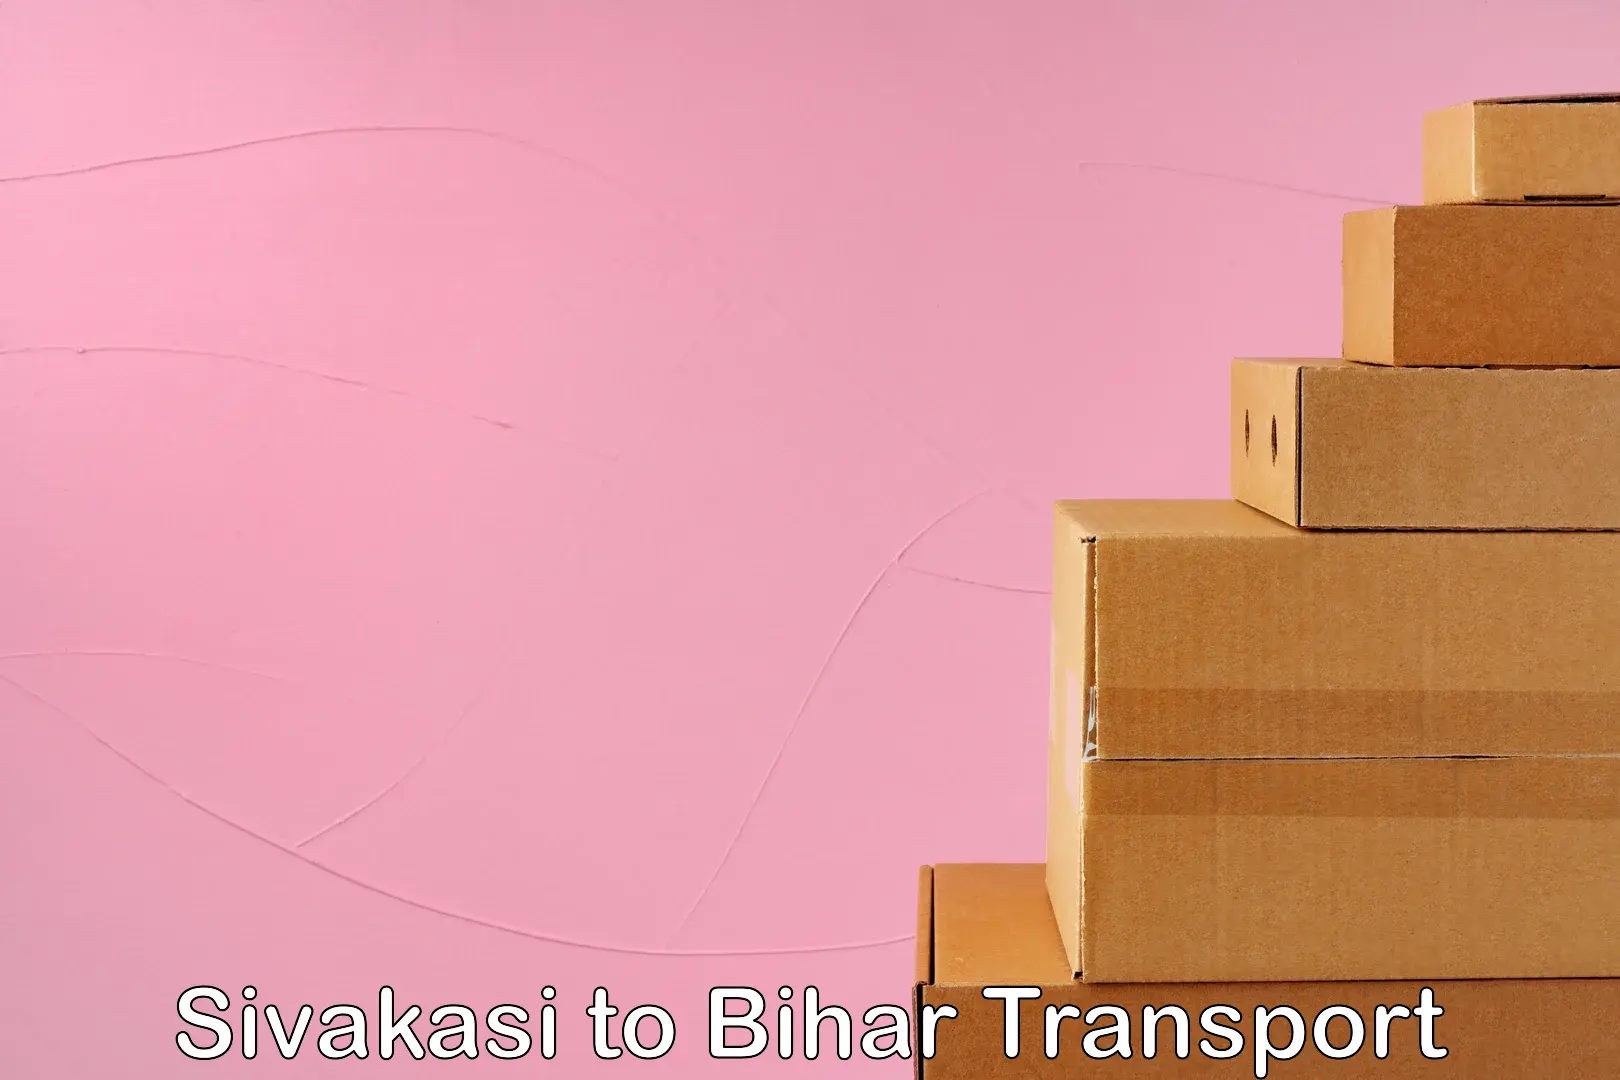 Air cargo transport services Sivakasi to Bihar